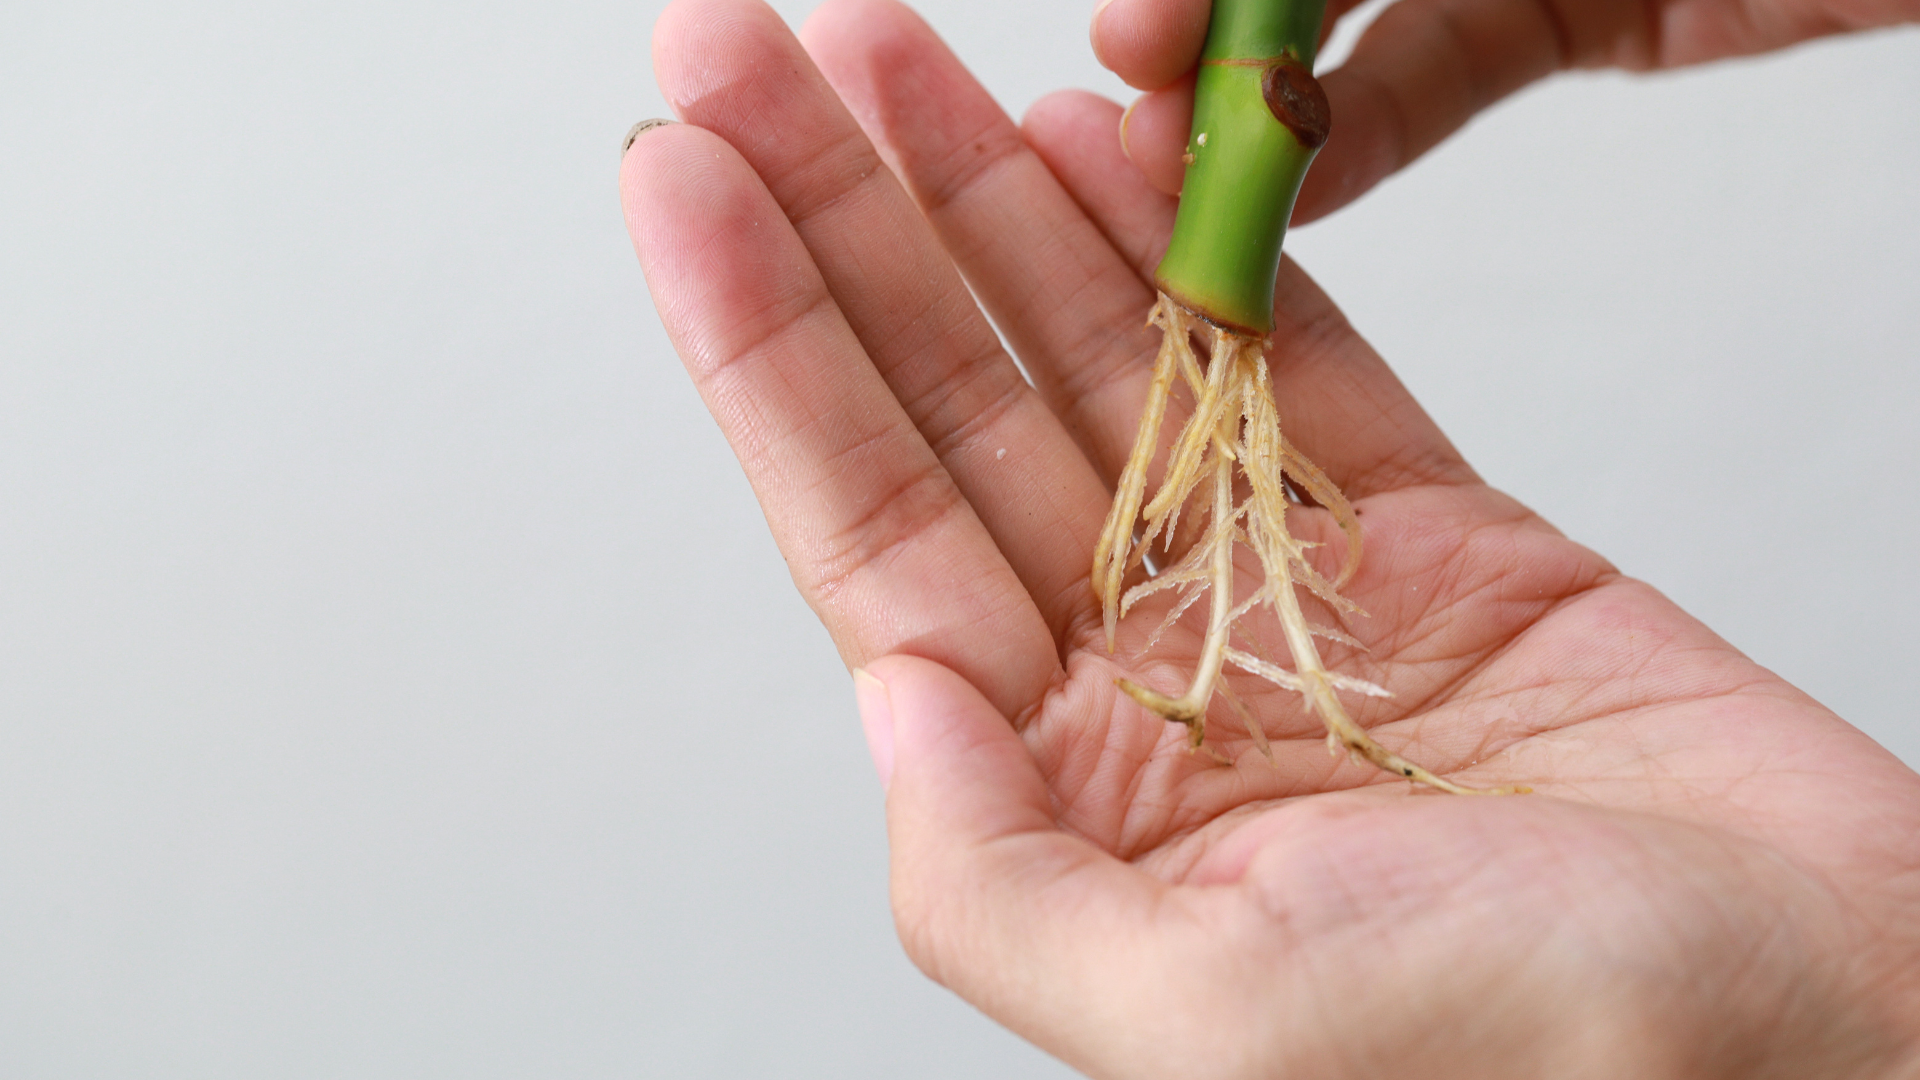 Dans l'image, une bouture de tige de plante est délicatement tenue dans une main. Les racines blanches de la bouture témoignent de sa vitalité et de sa force, prêtes à s'épanouir dans un nouvel environnement. Cette image incarne la promesse de la croissance et de la pérennité, capturant l'instant où une nouvelle plante prend racine.